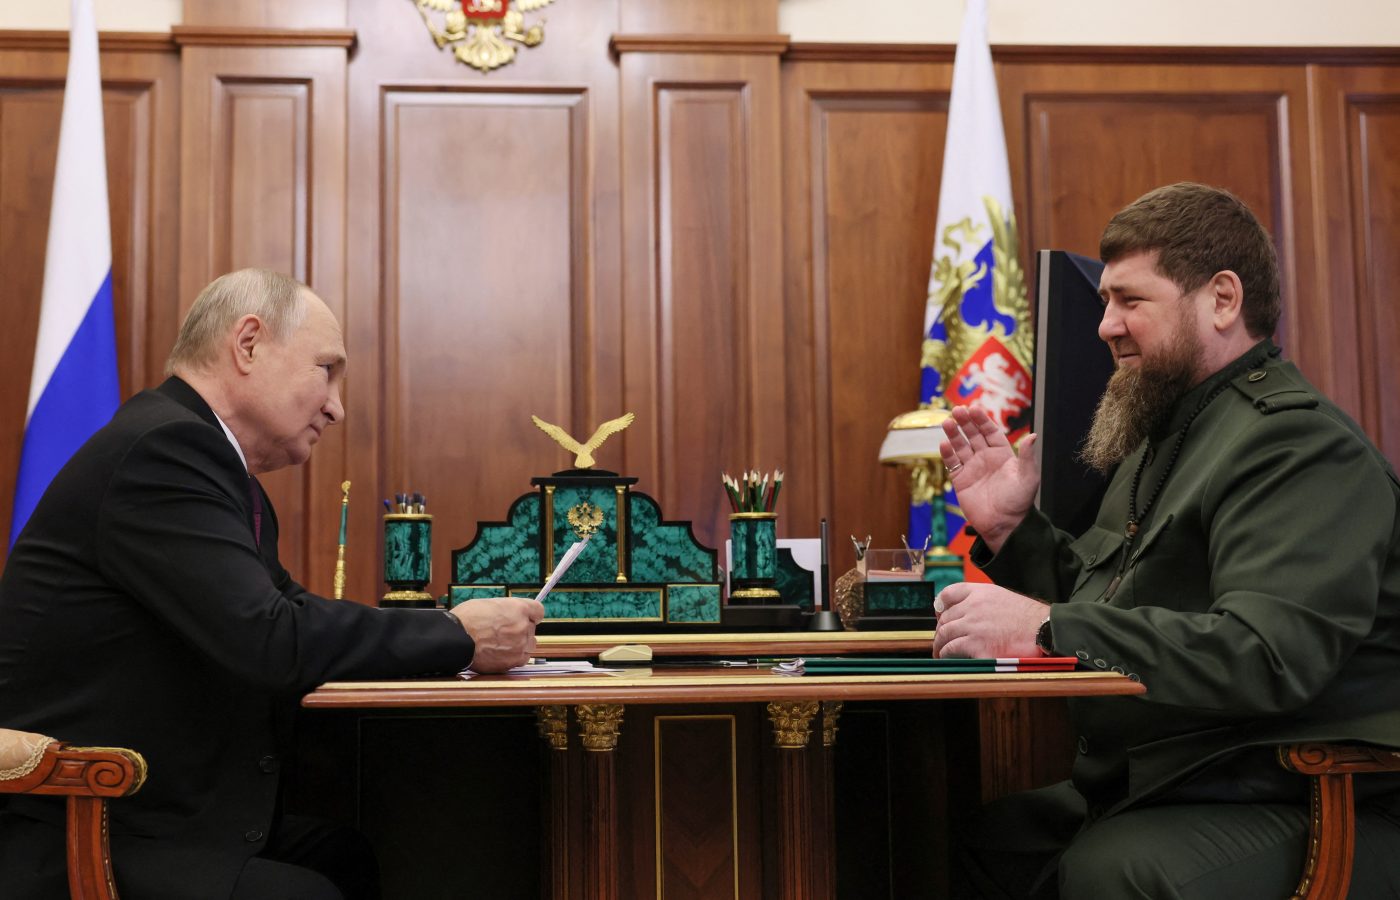 Thủ lĩnh Chechnya bất ngờ xin gặp TT Putin để đưa ra một đề nghị quan trọng ở Ukraine- Ảnh 1.